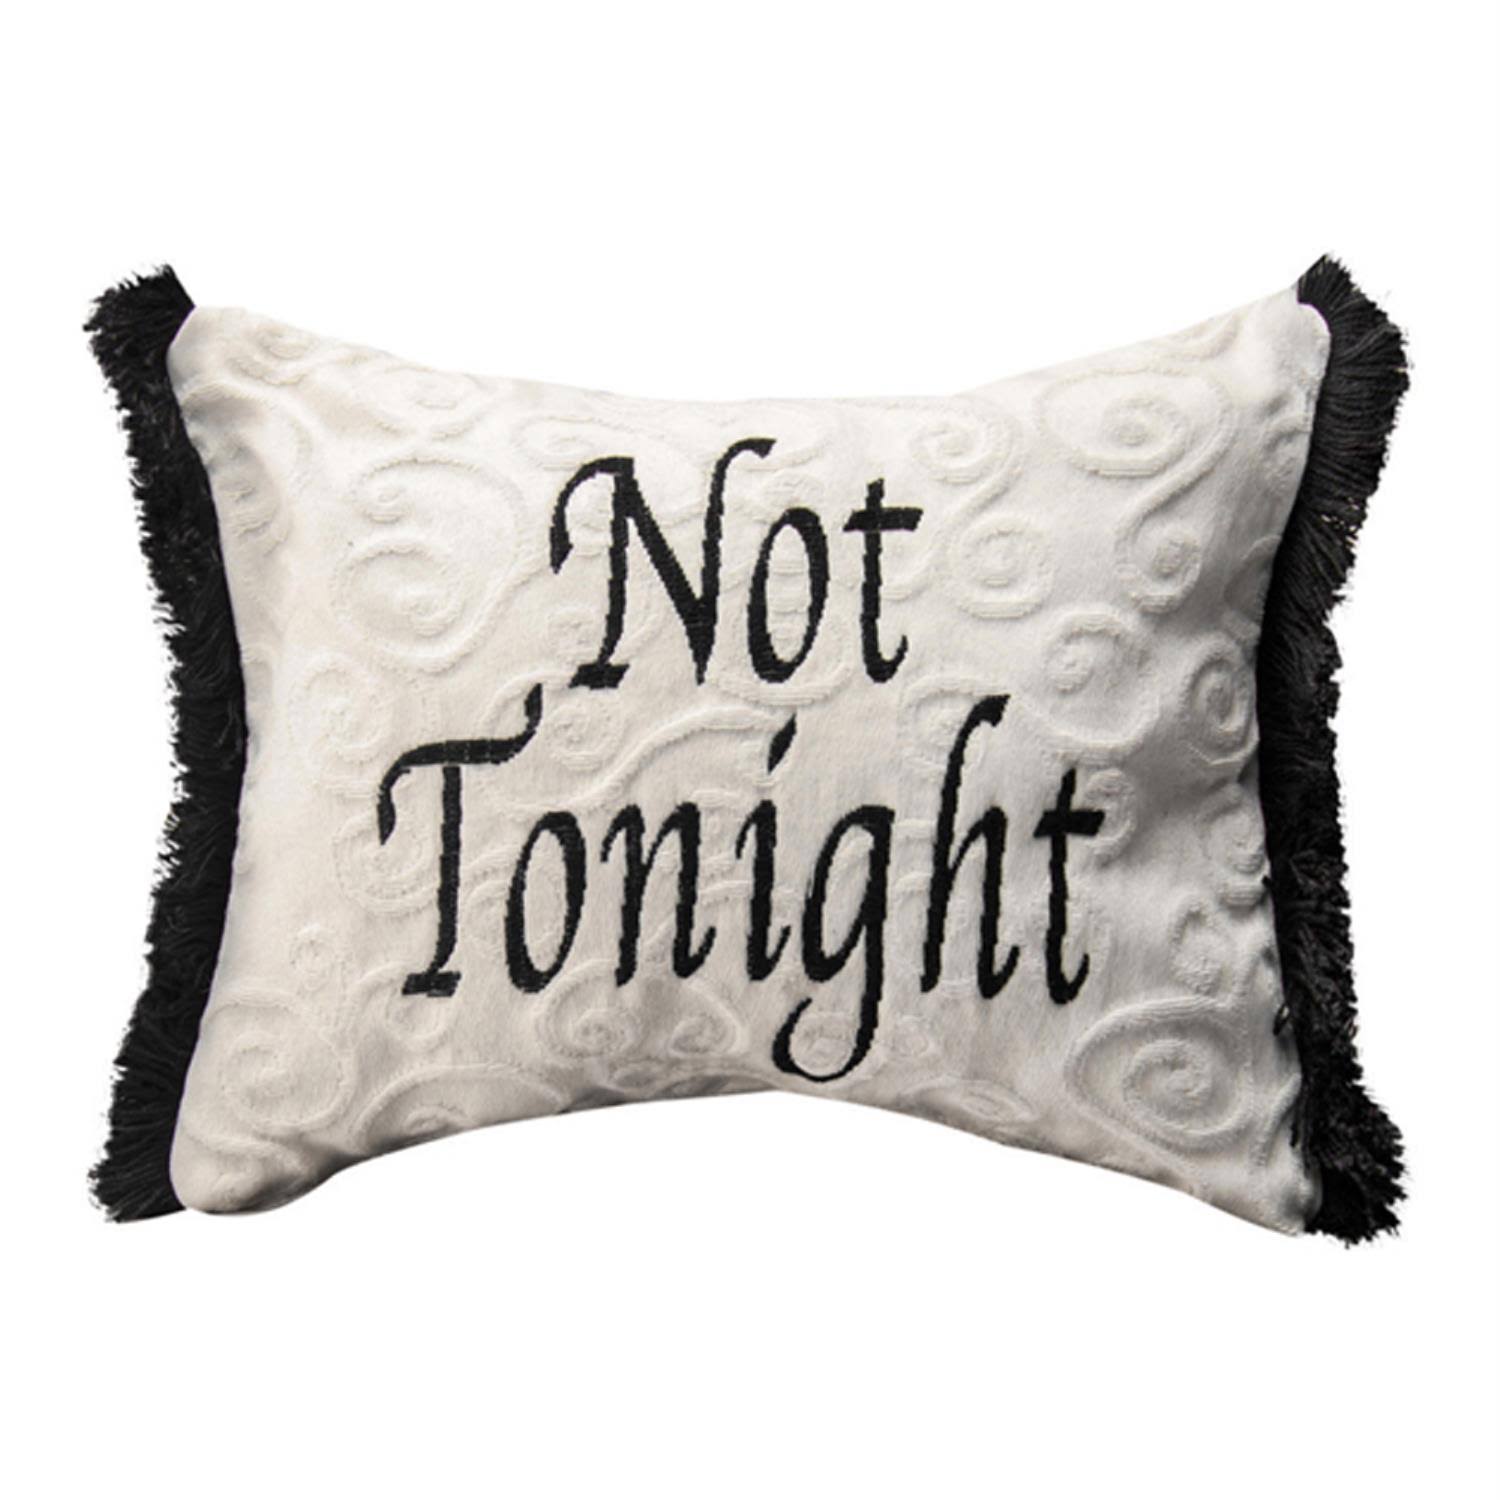 Manual Woodworkers Tonight Not Tonight Word Lumbar Pillow - 2pcs